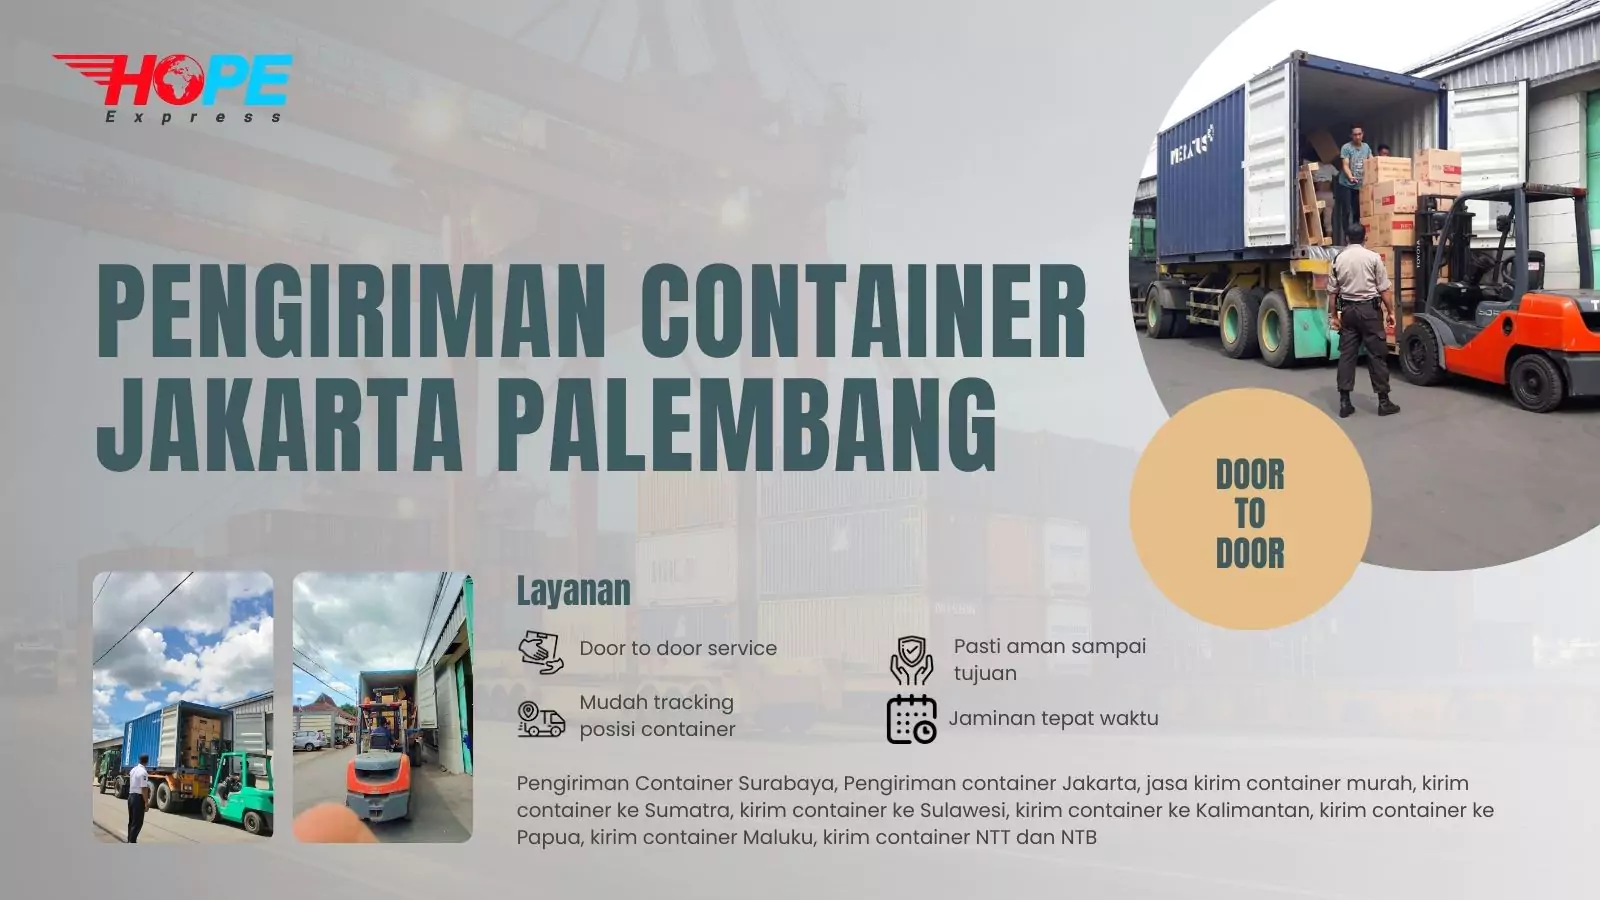 Pengiriman Container Jakarta Palembang